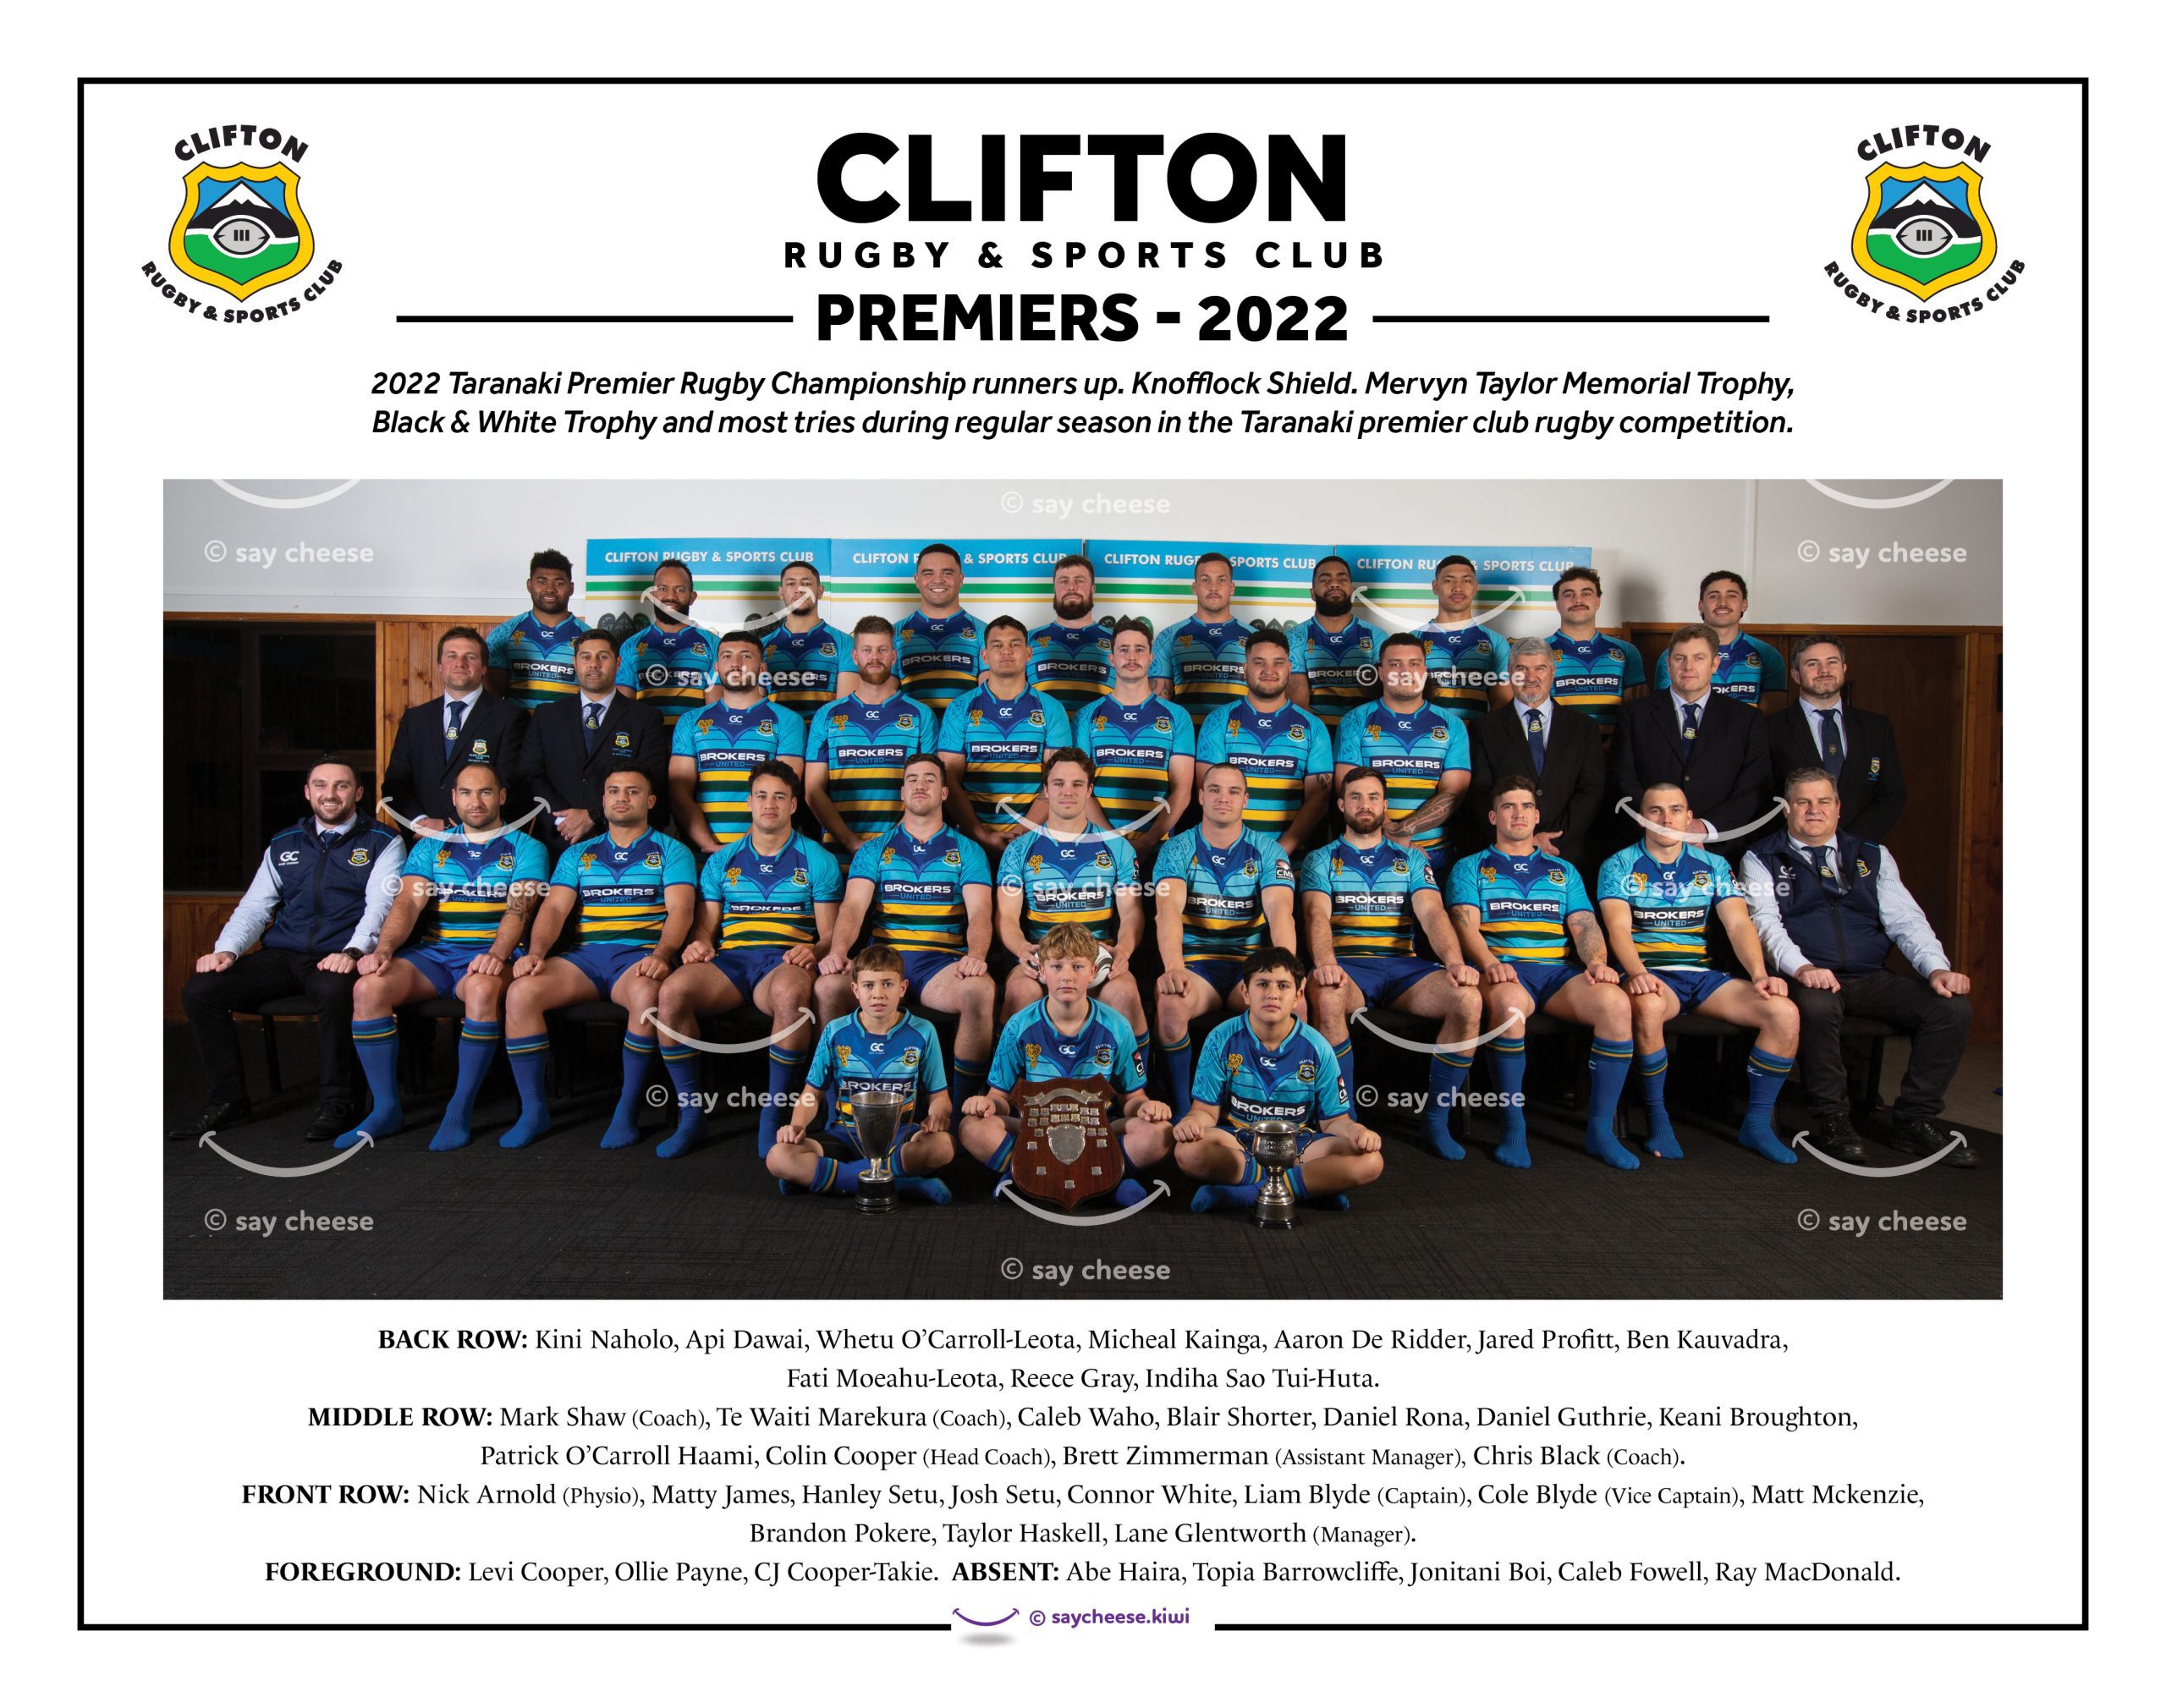 2022 Clifton Premiers [22022CLIFPREM]